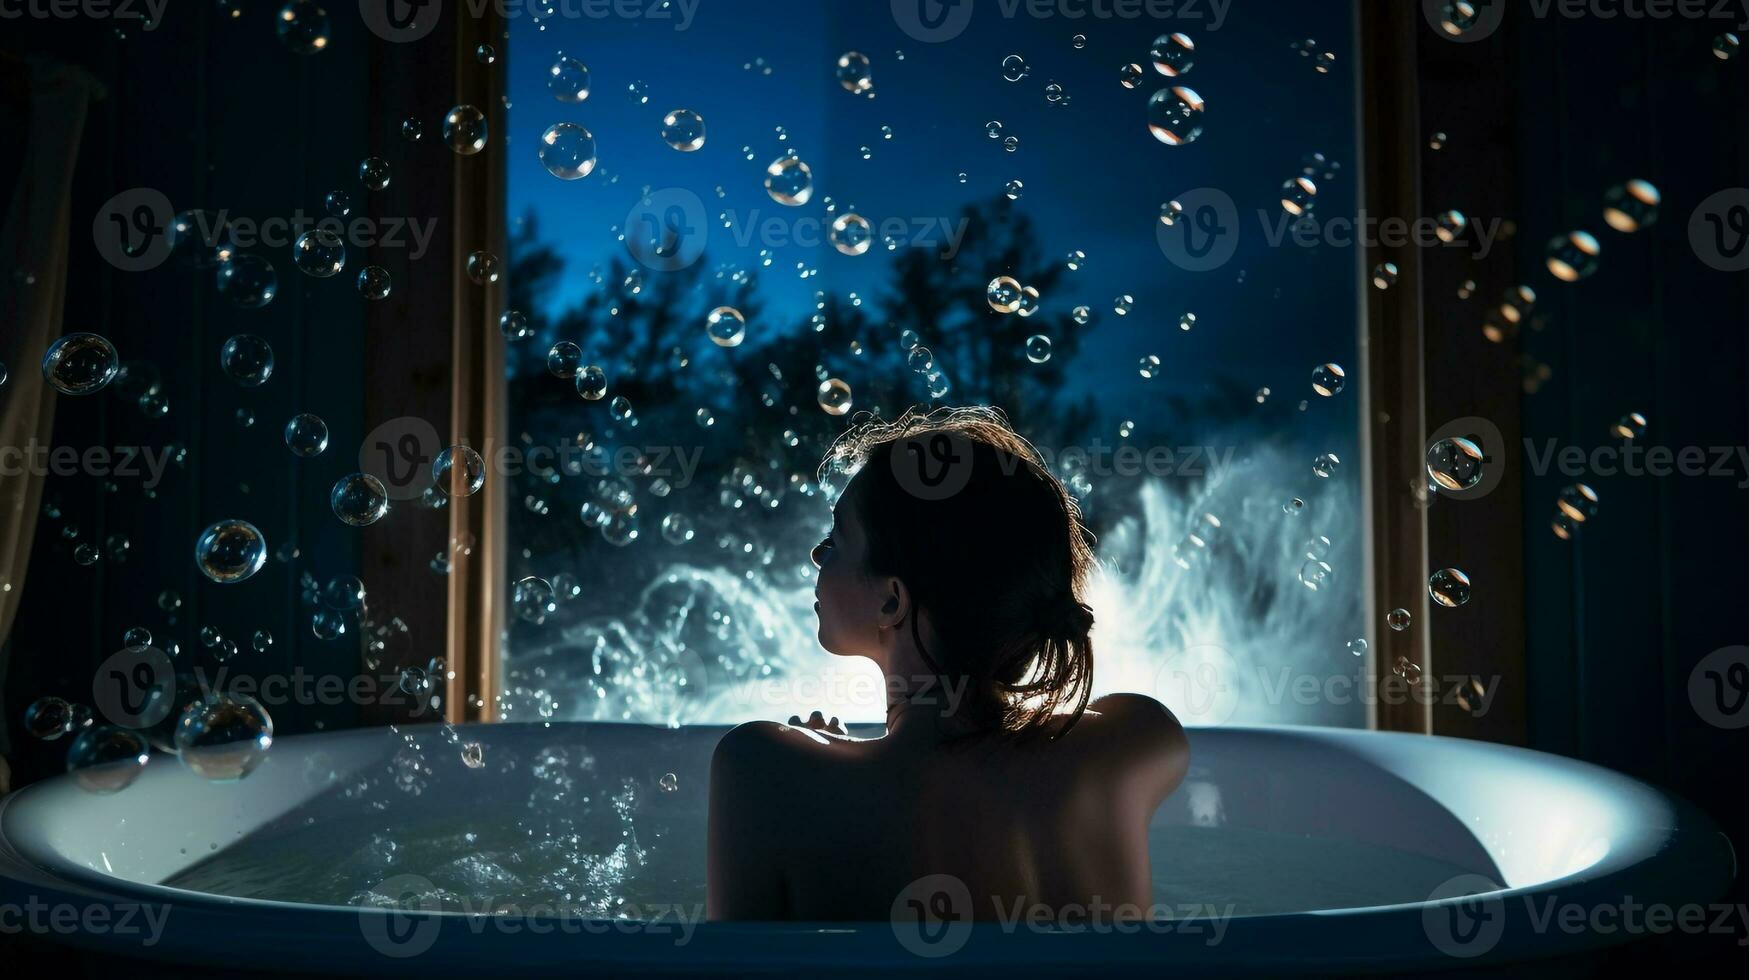 een persoon is zittend in een bad omringd door bubbels, mentaal Gezondheid afbeeldingen, fotorealistisch illustratie foto